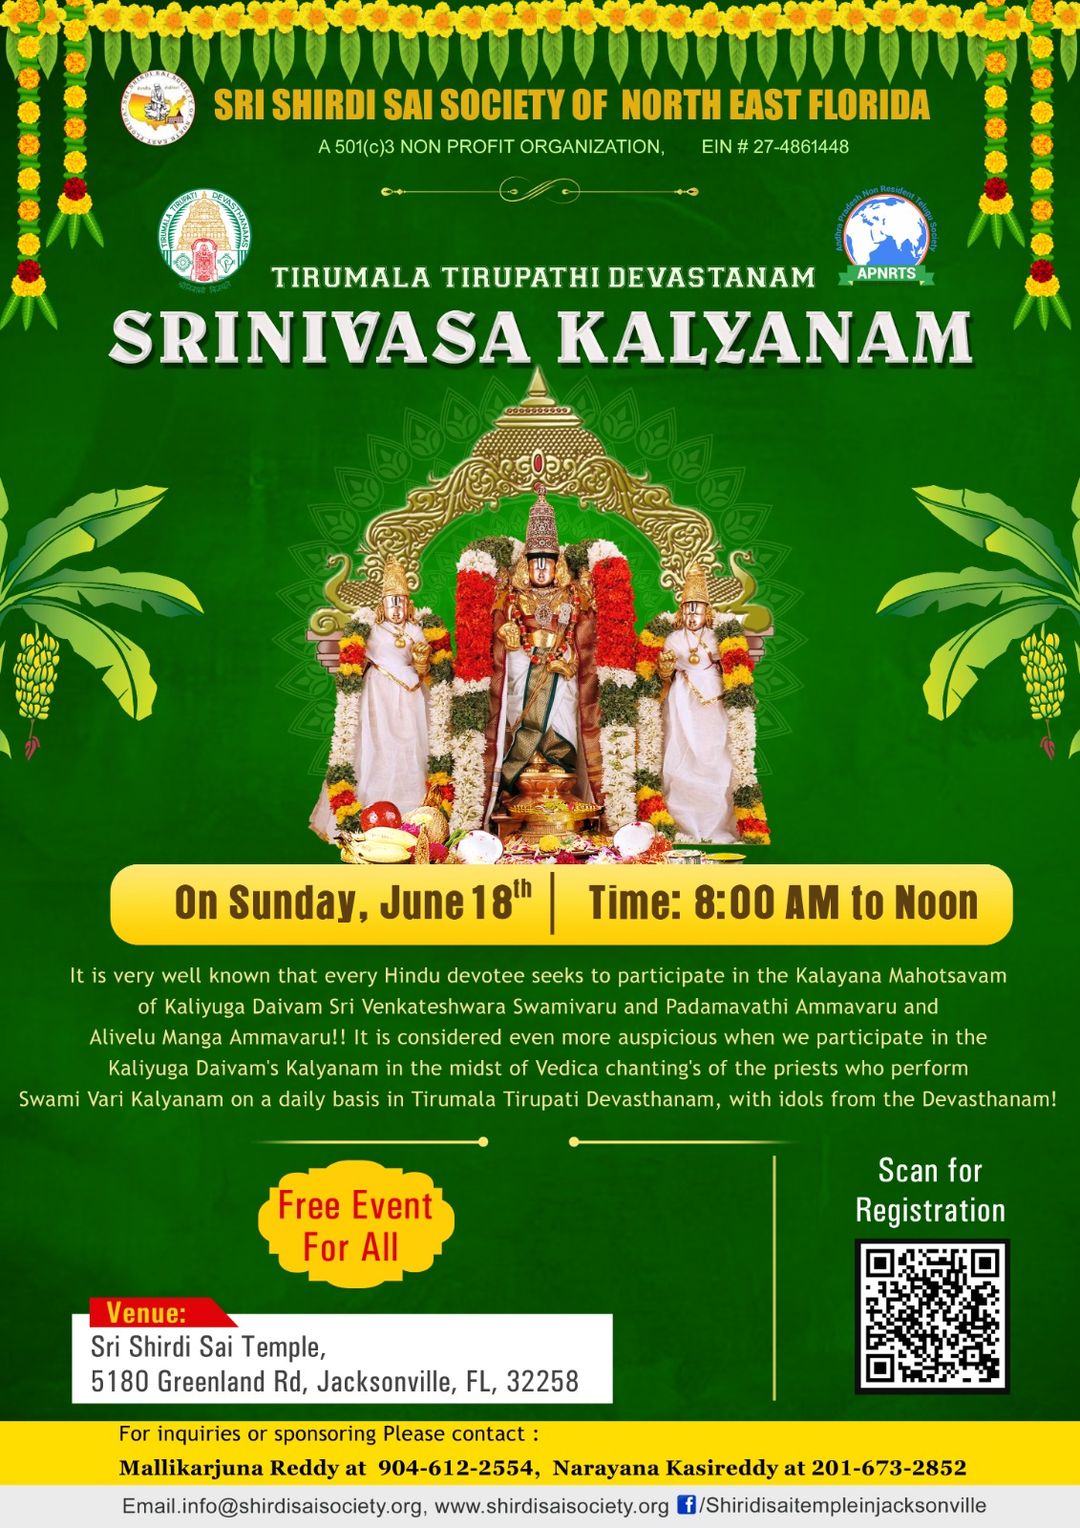 Sri Srinivasa Kalyanam performed by TTD